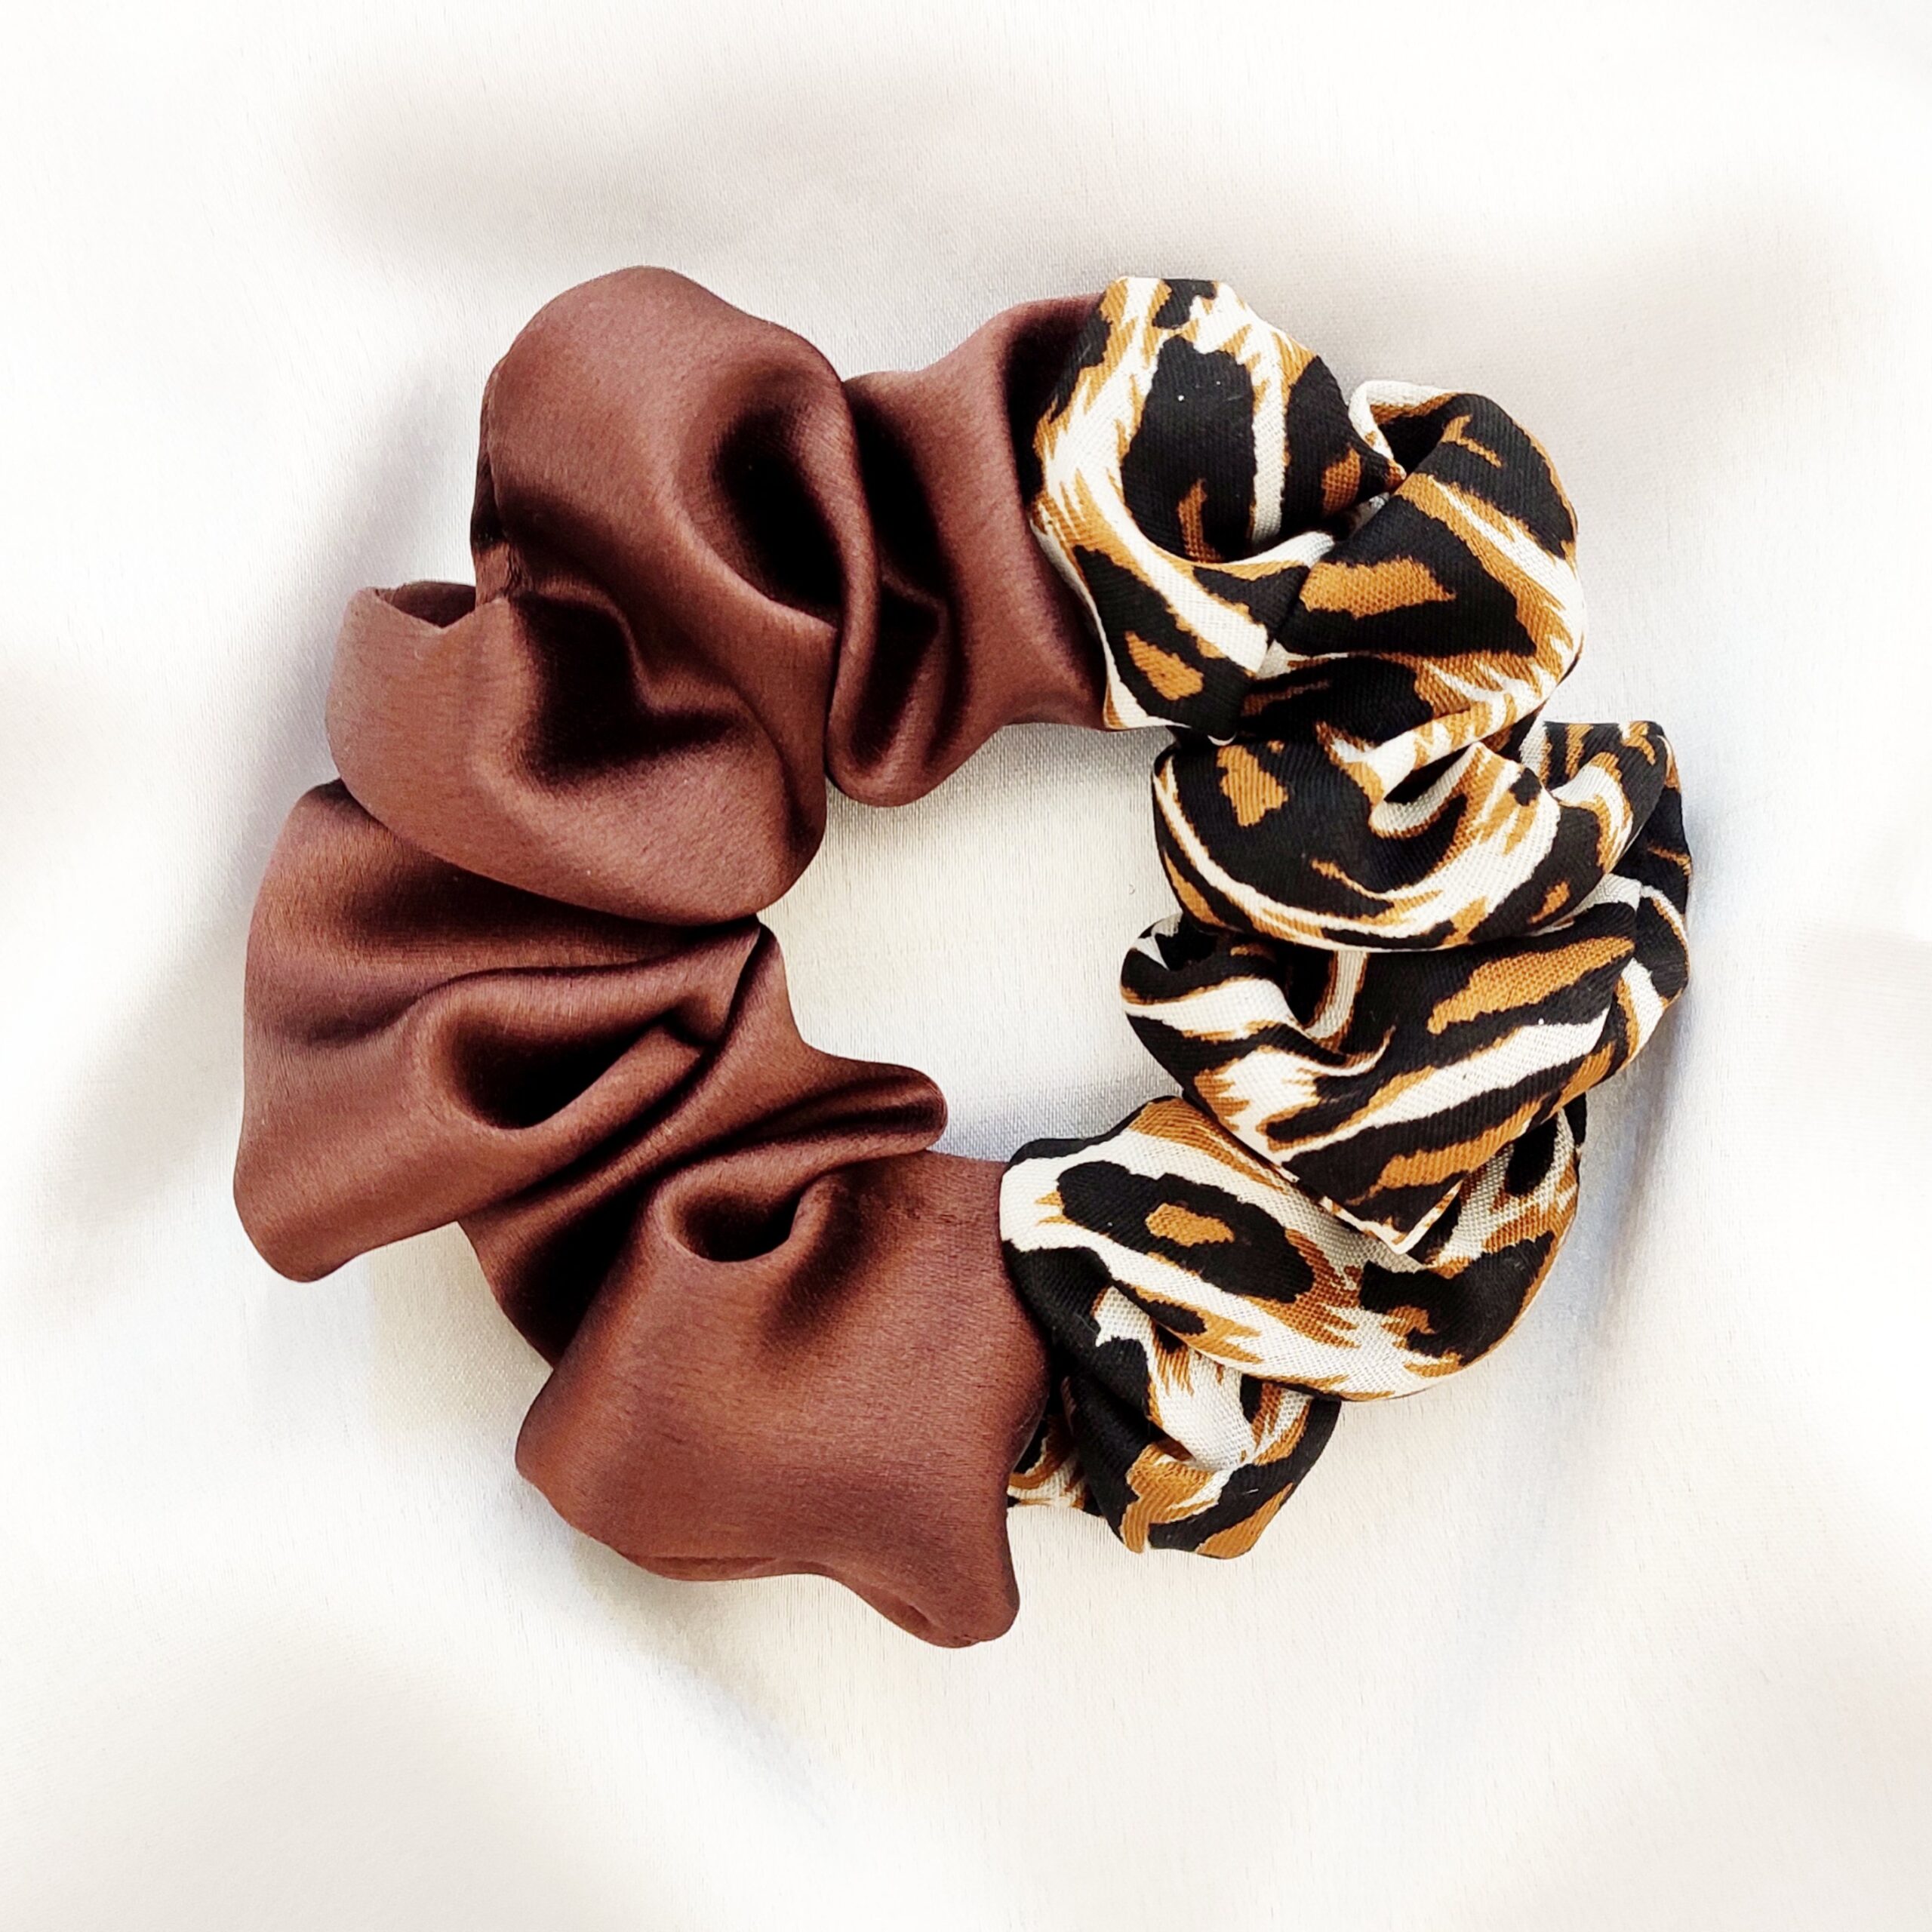 Dual Scrunchie || Cheetah/Tiger/Leapord Printed Crepe + Brown Satin